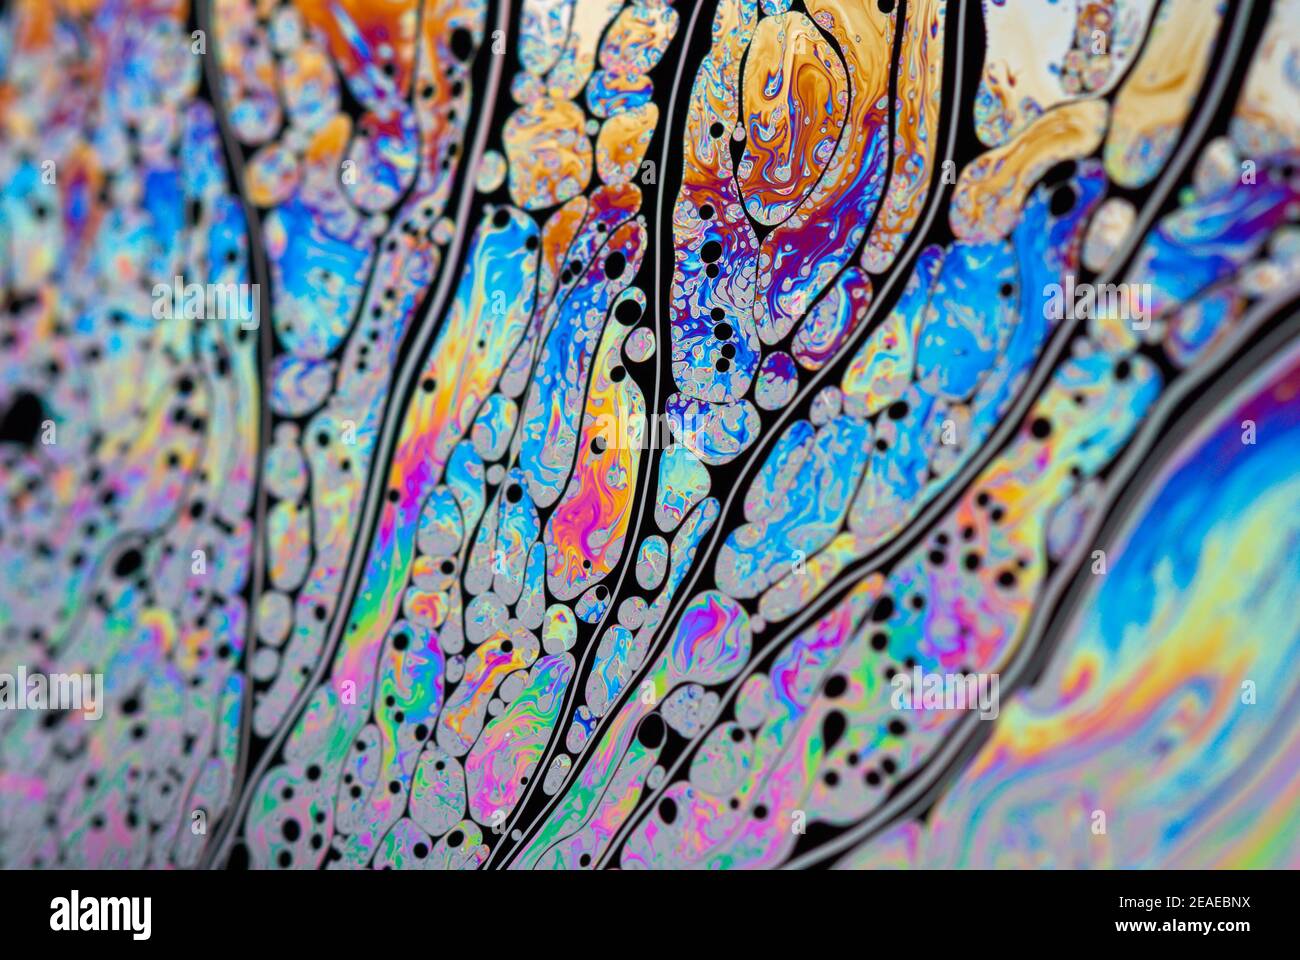 Arrière-plan abstrait multicolore, structure capillaire avec cellules colorées. Motifs ornementaux lumineux formant une mosaïque. Liquide art moderne bulles de savon, Banque D'Images